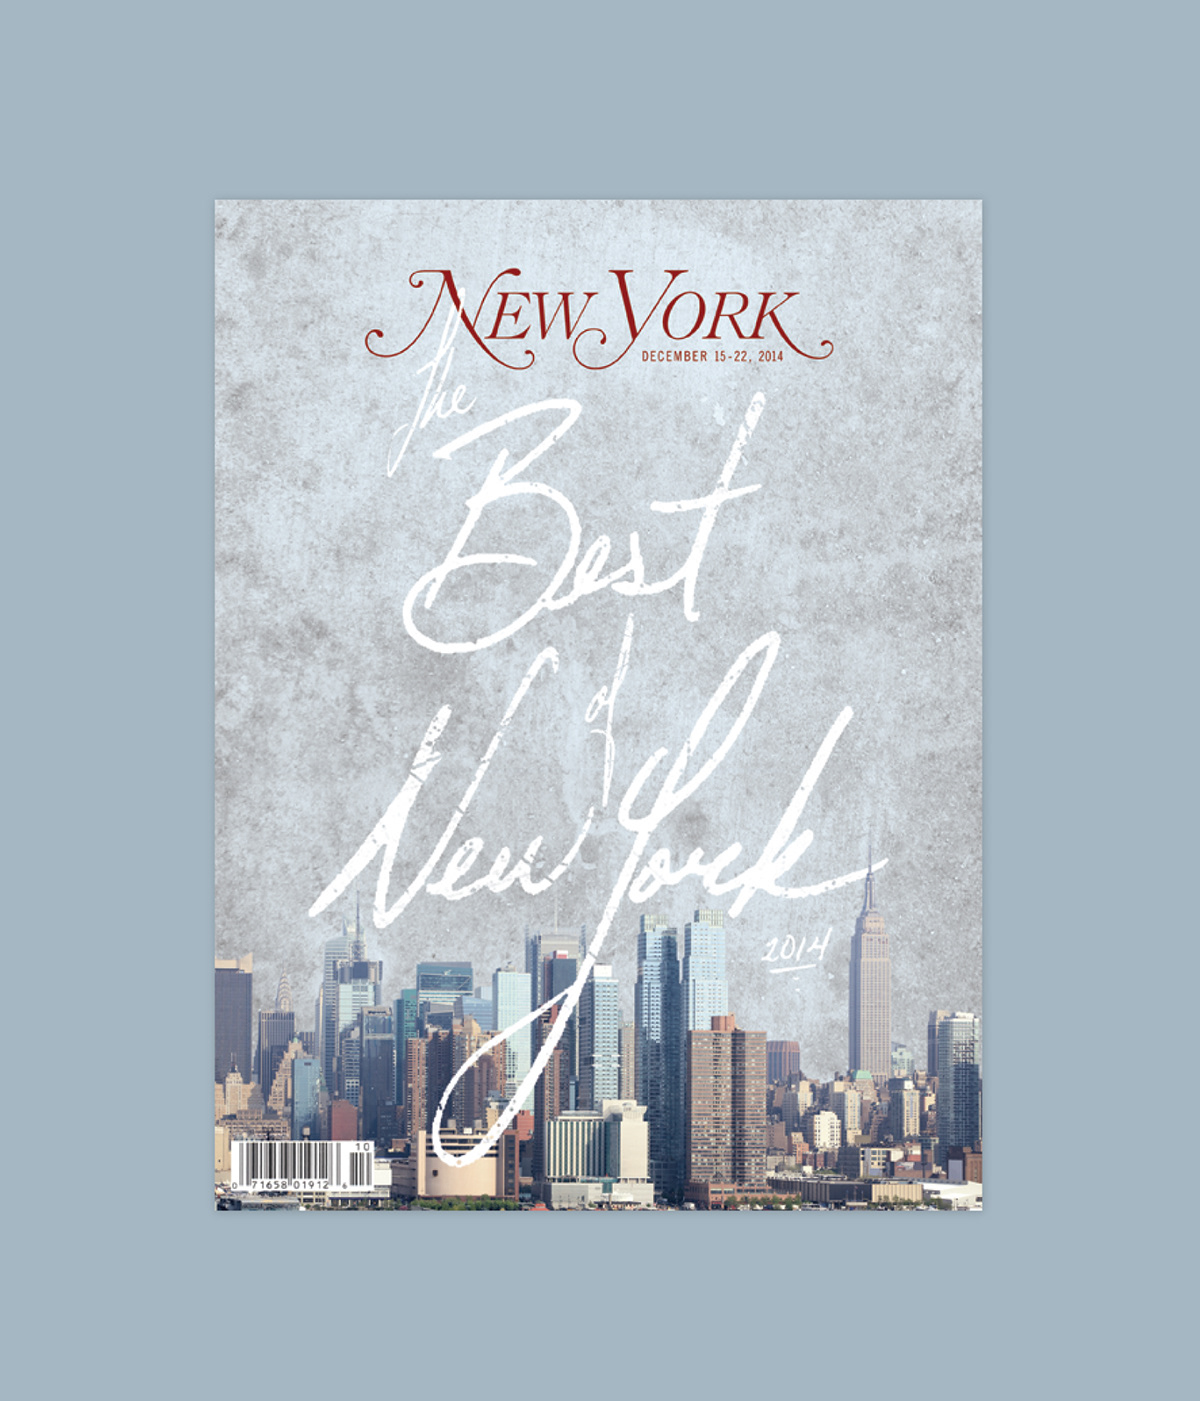 New York New York Magazine sva cover design